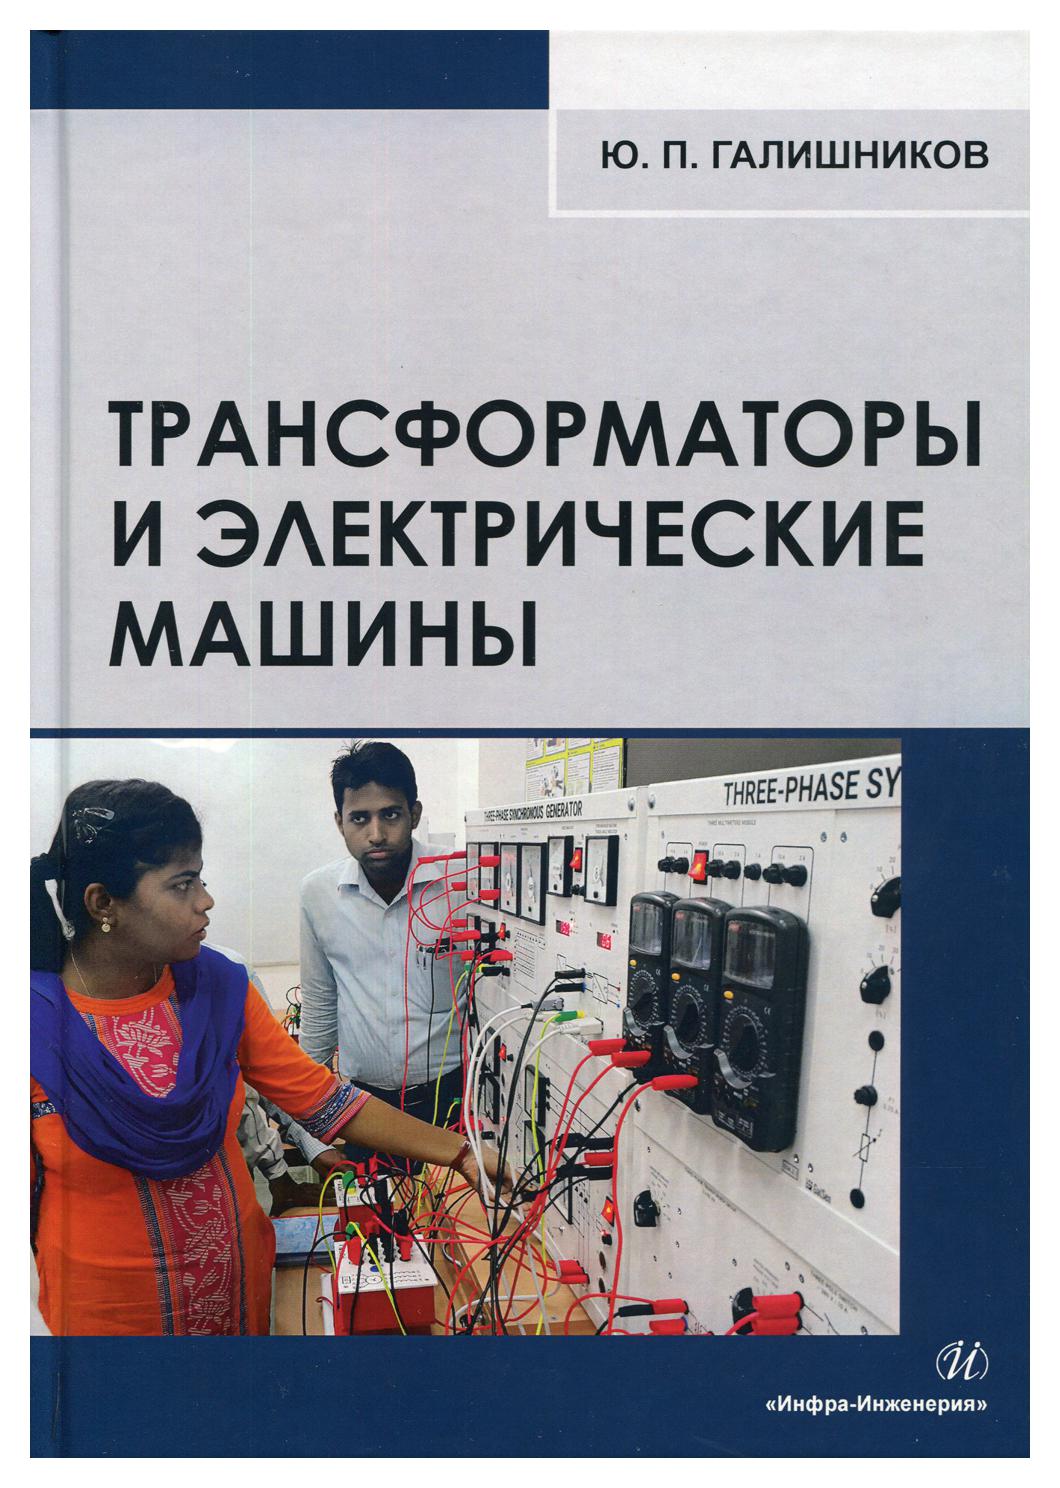 фото Книга трансформаторы и электрические машины инфра-инженерия